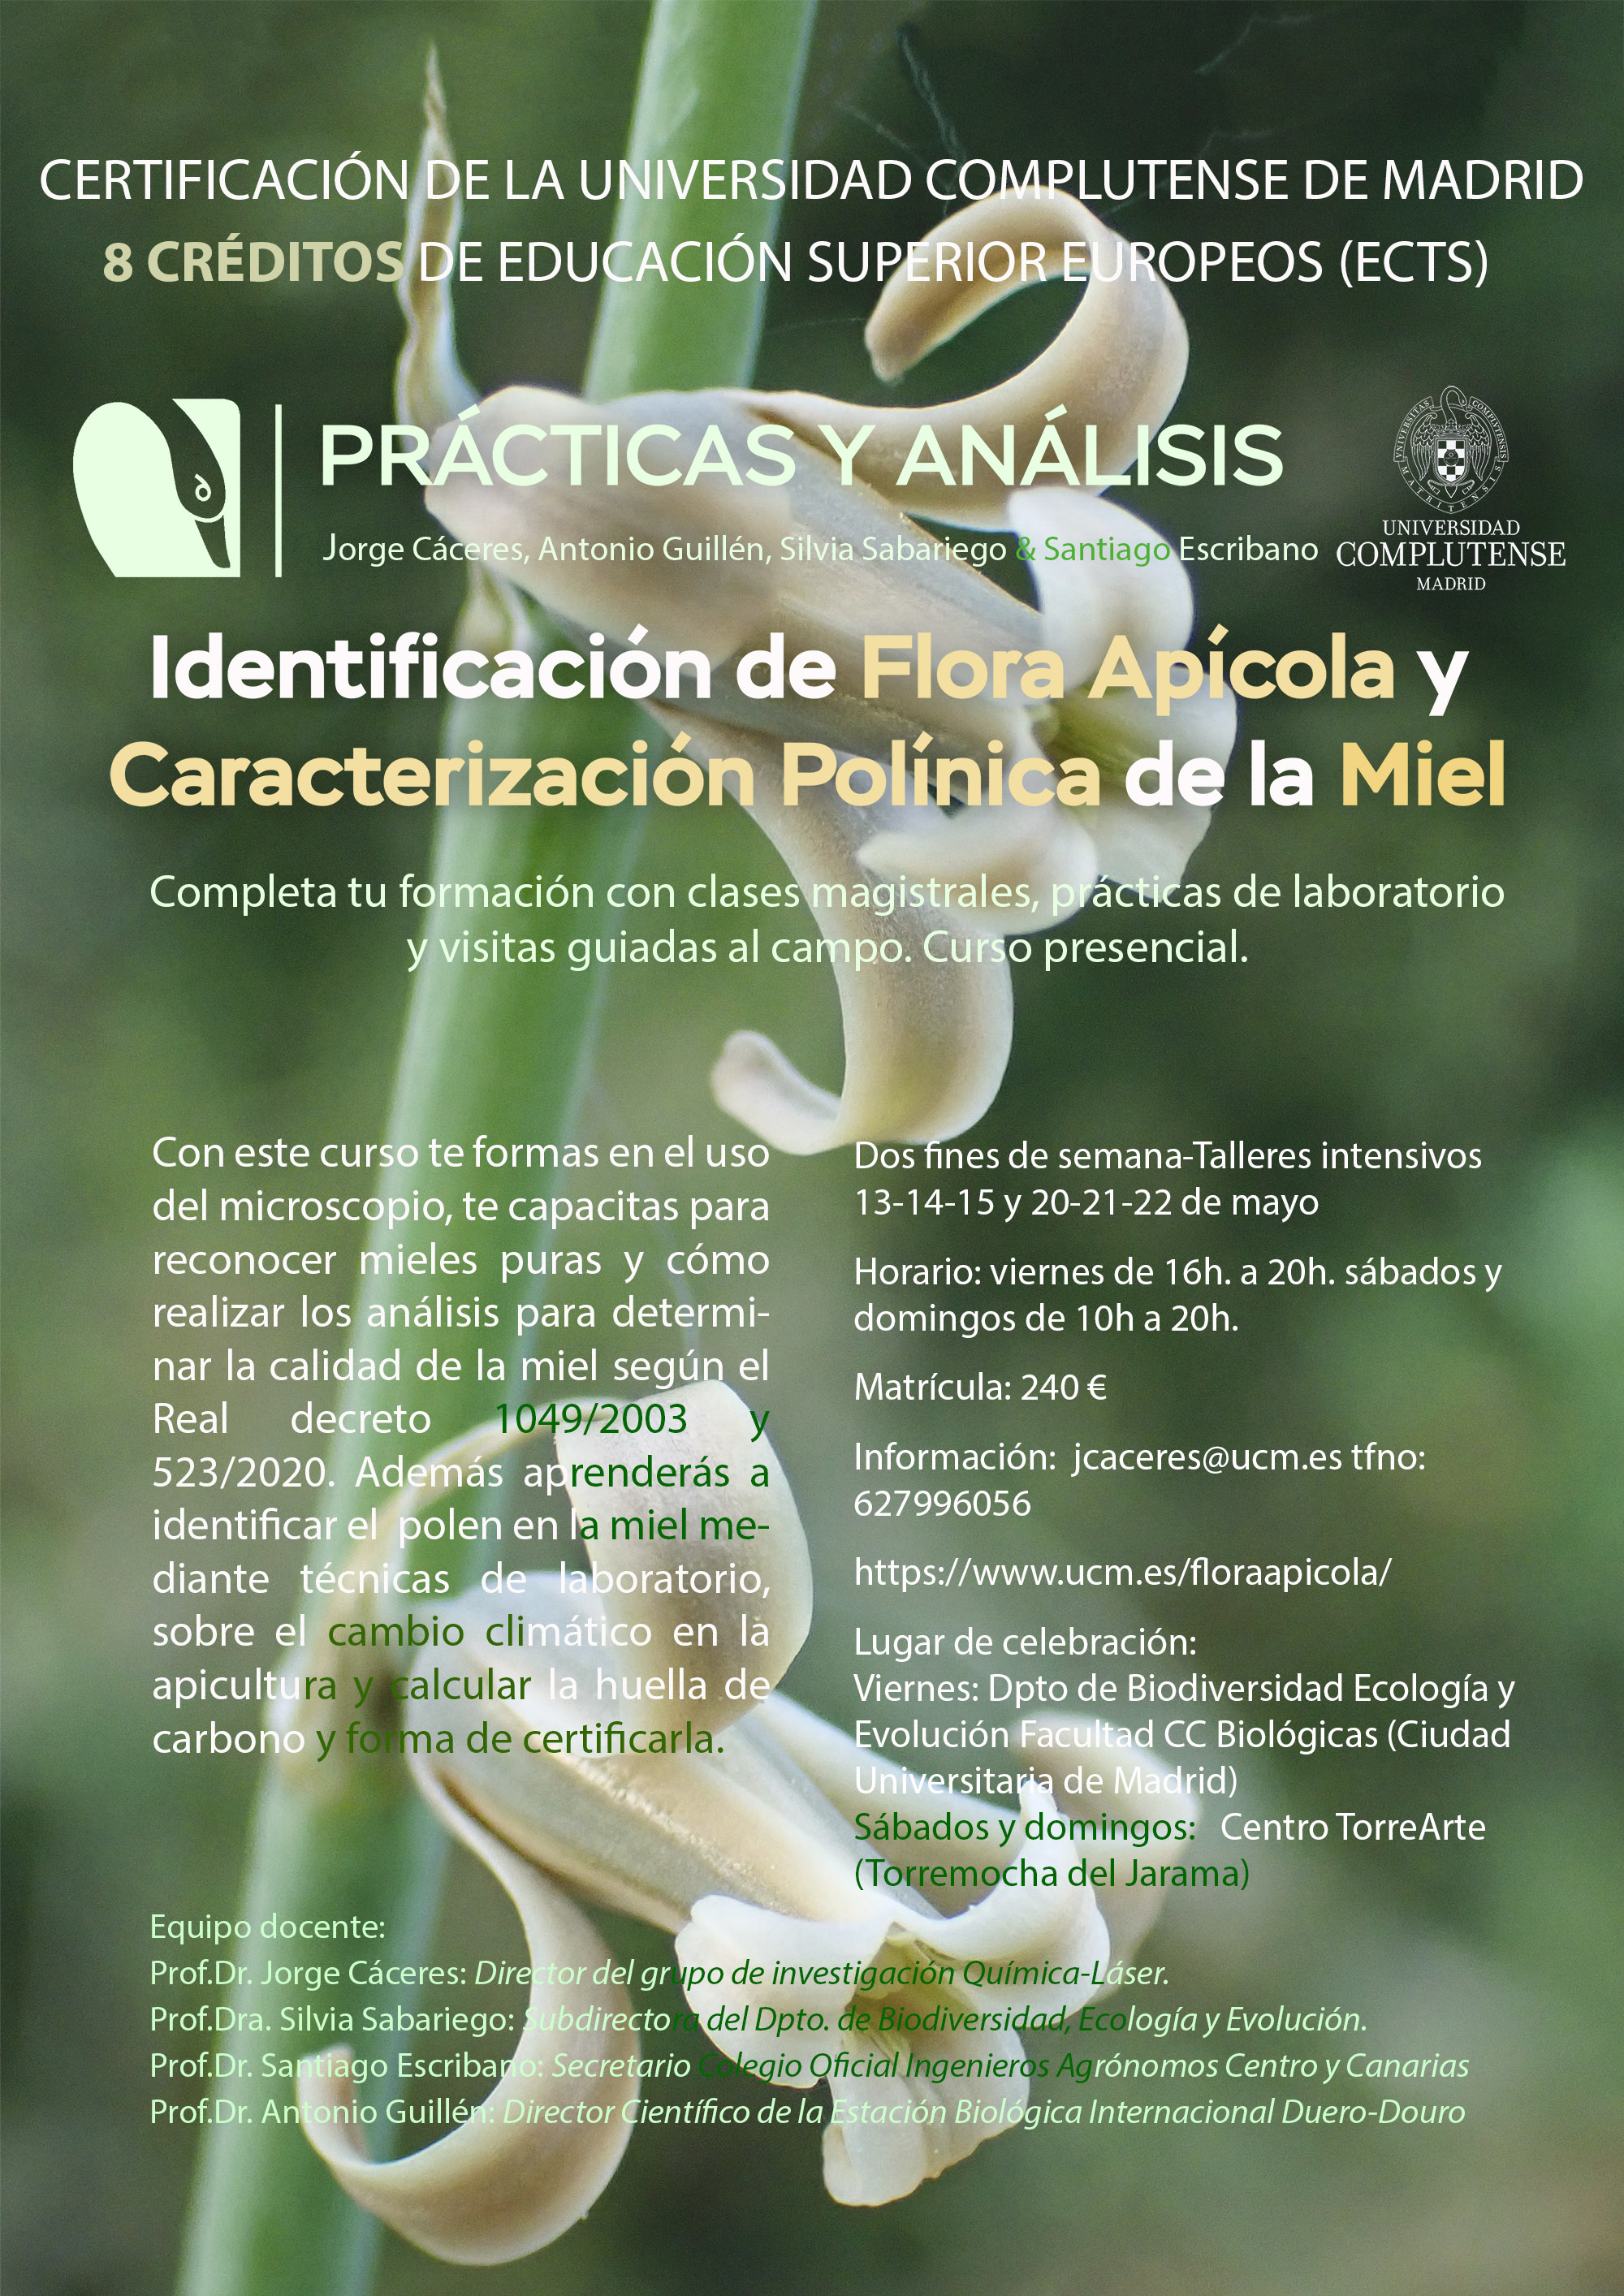 Curso "Identificación de Flora apícola y caracterización polínica de la miel. Prácticas y análisis" - 1